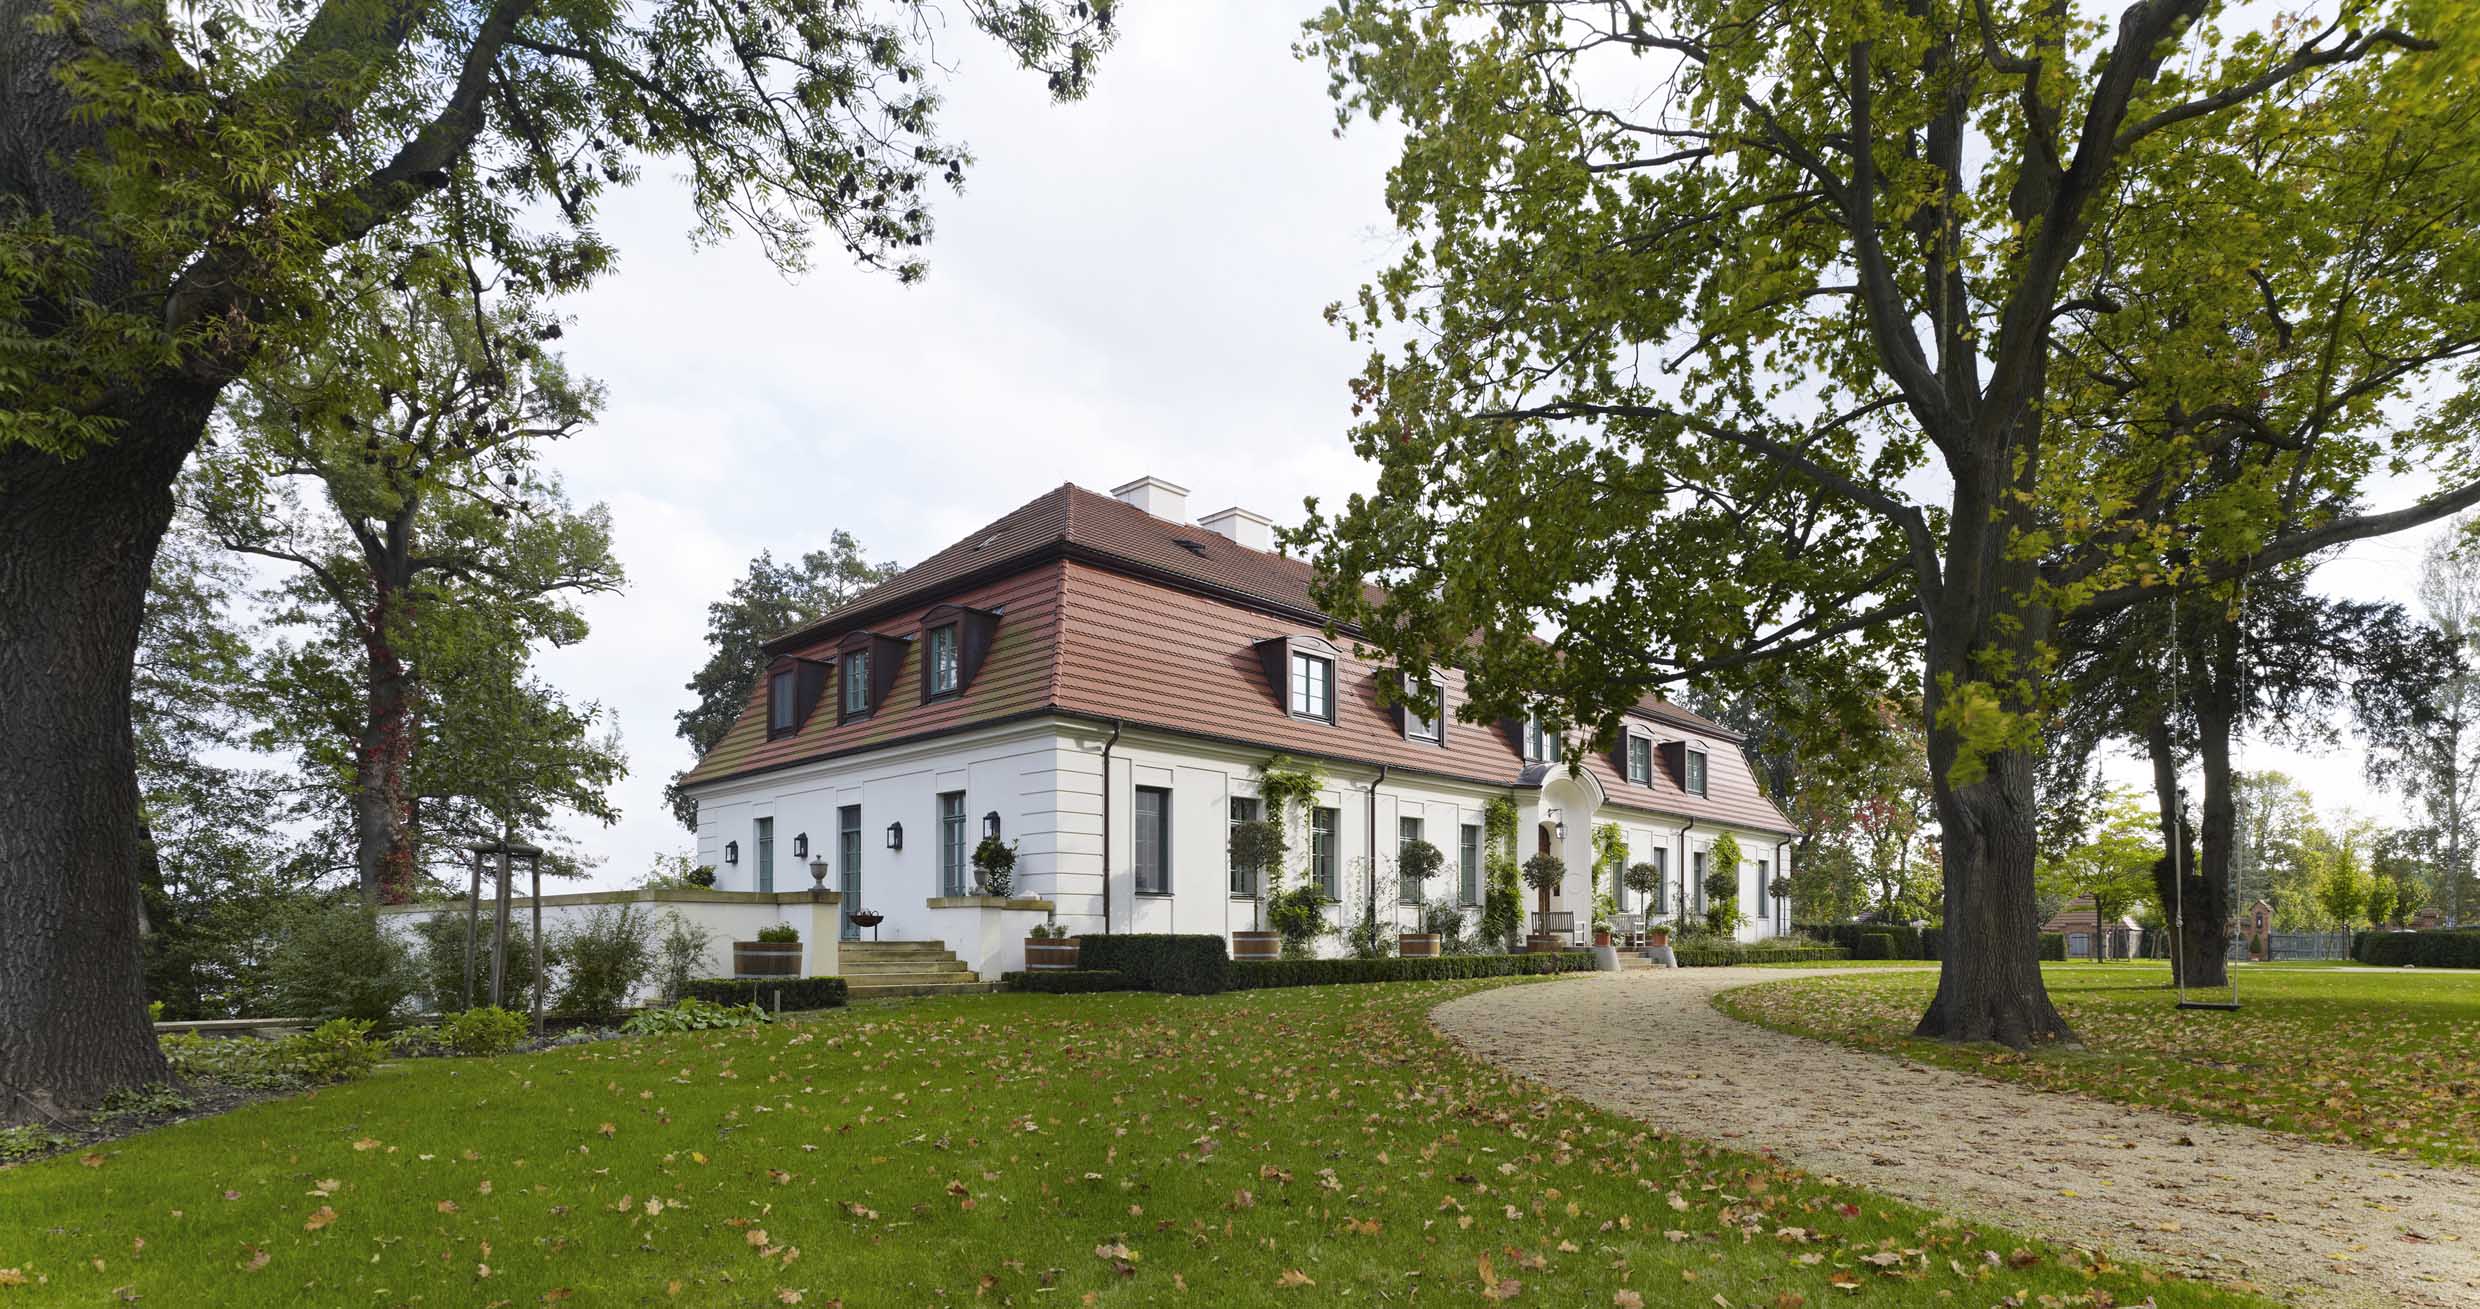 Eibenhof in Bad Saarow